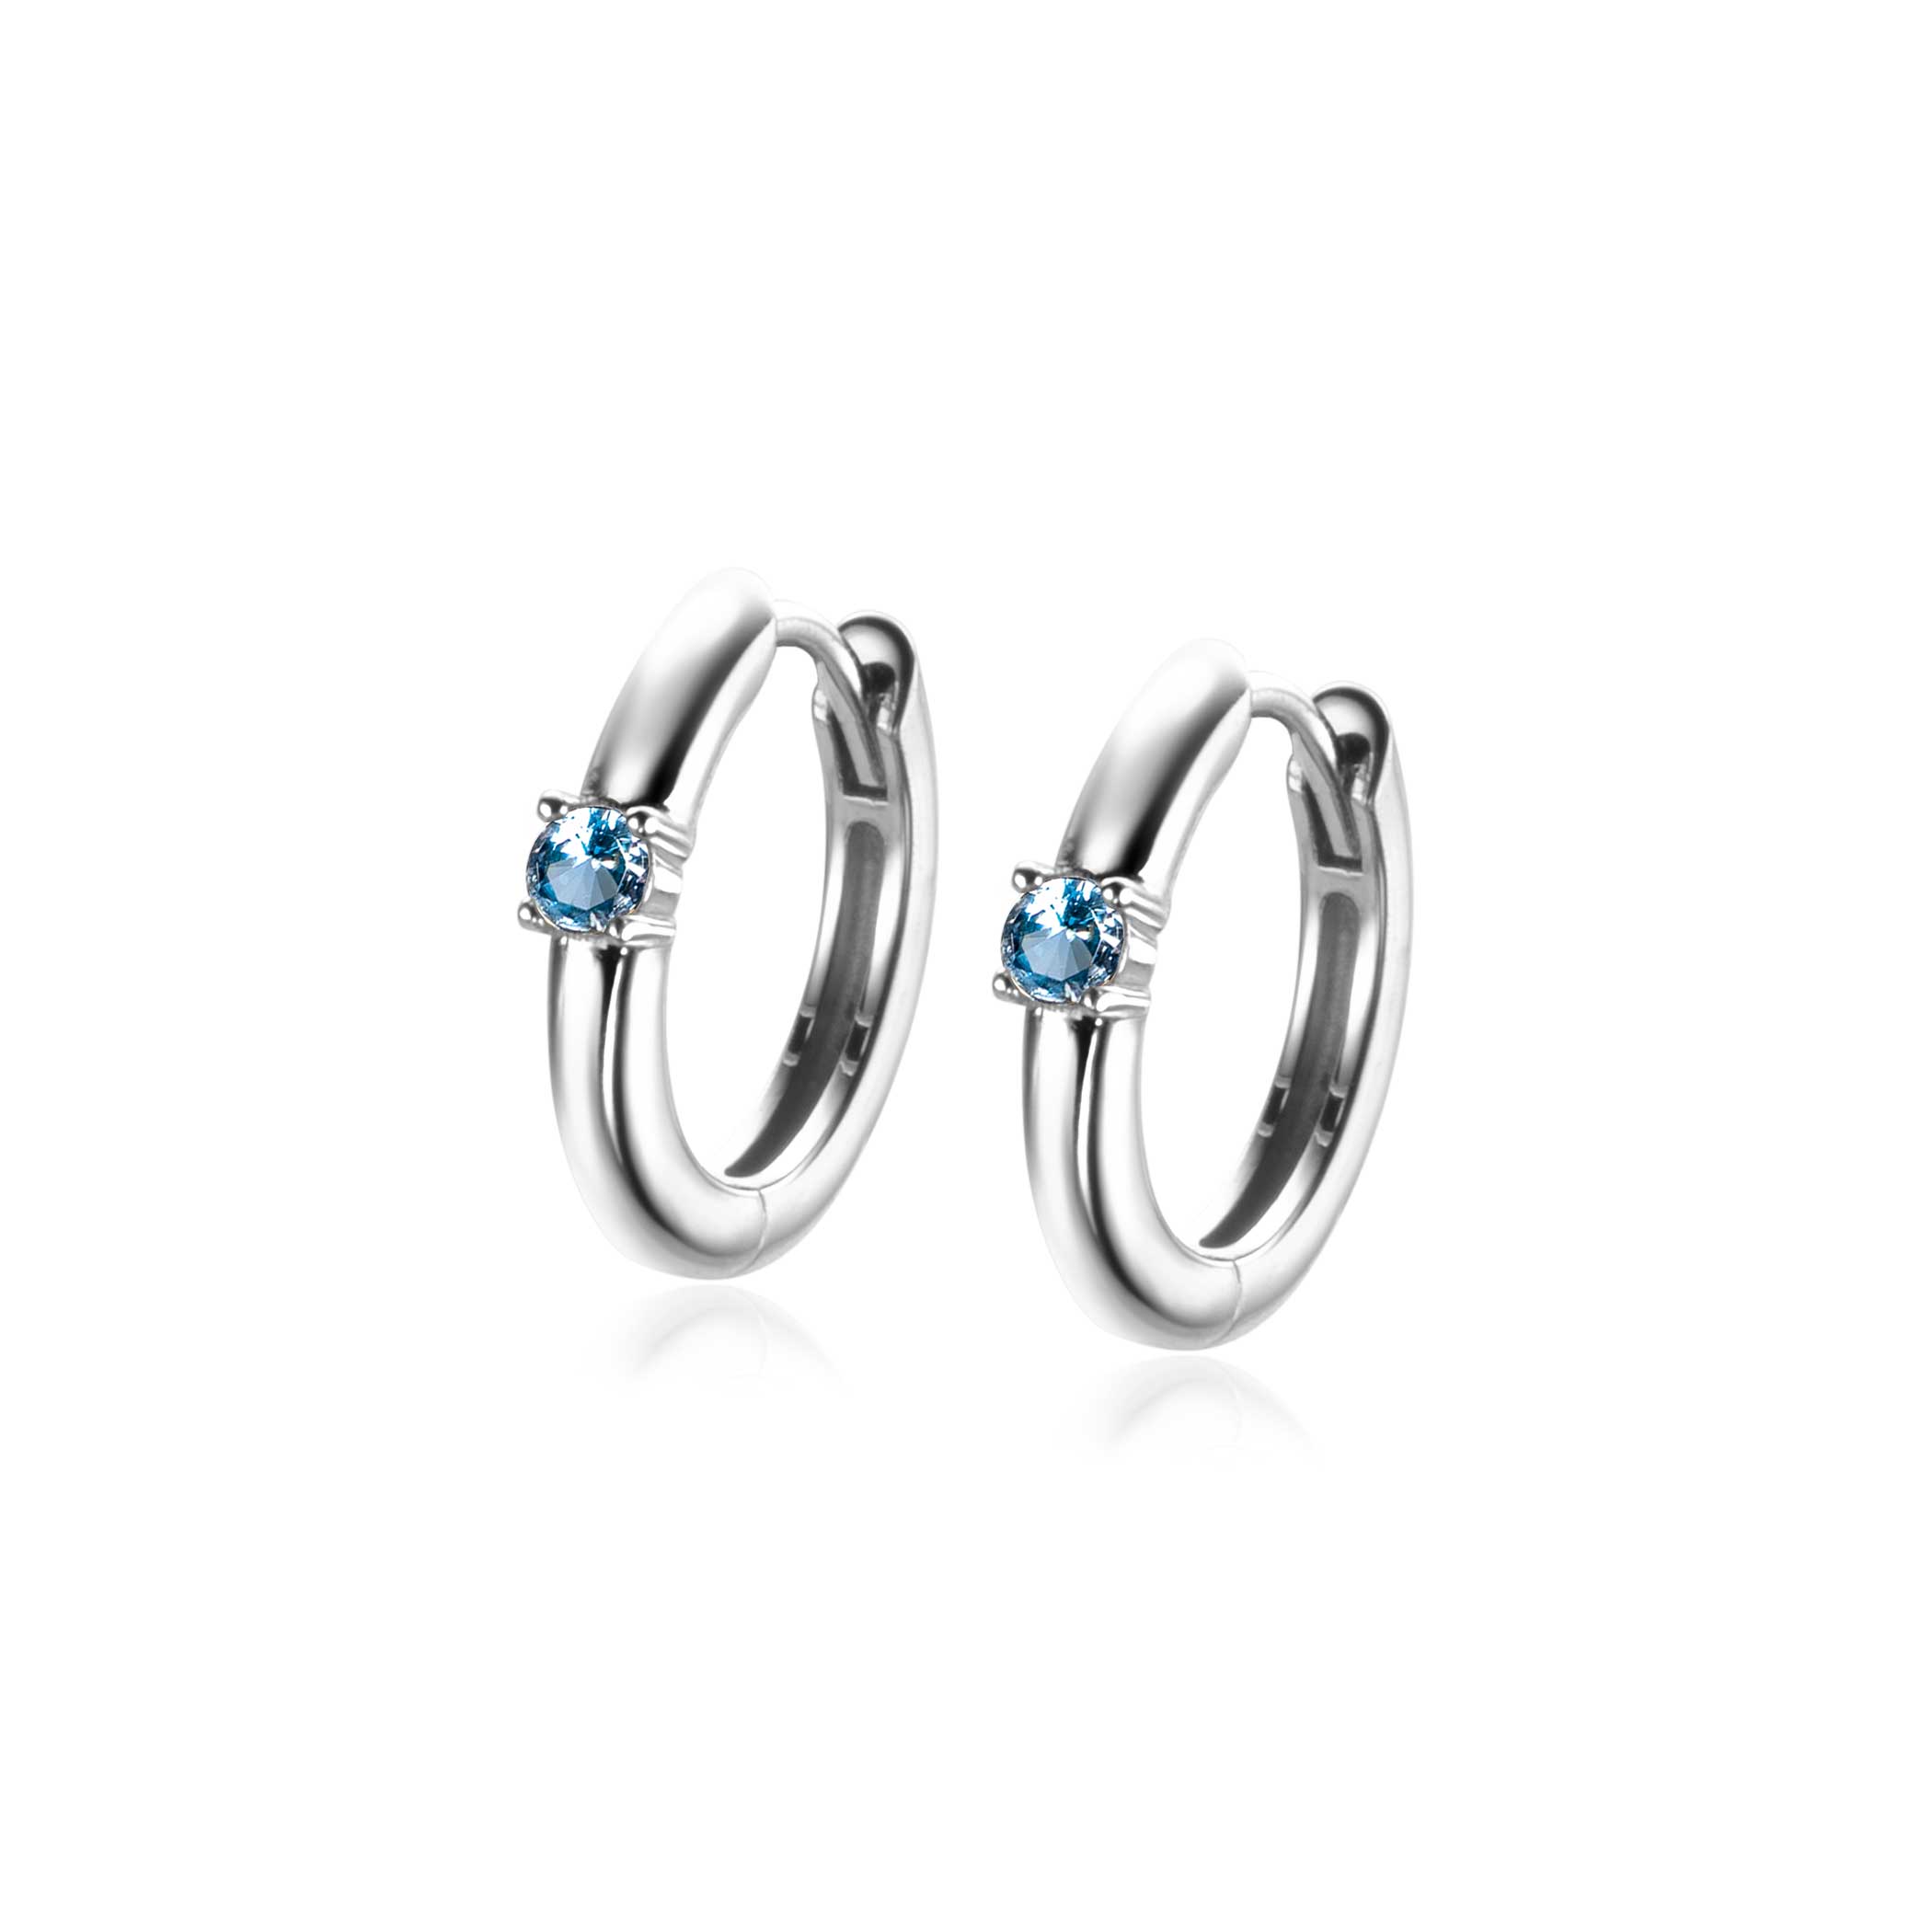 DECEMBER Hoop Earrings 13mm Sterling Silver with Birthstone Blue Topaz Zirconia